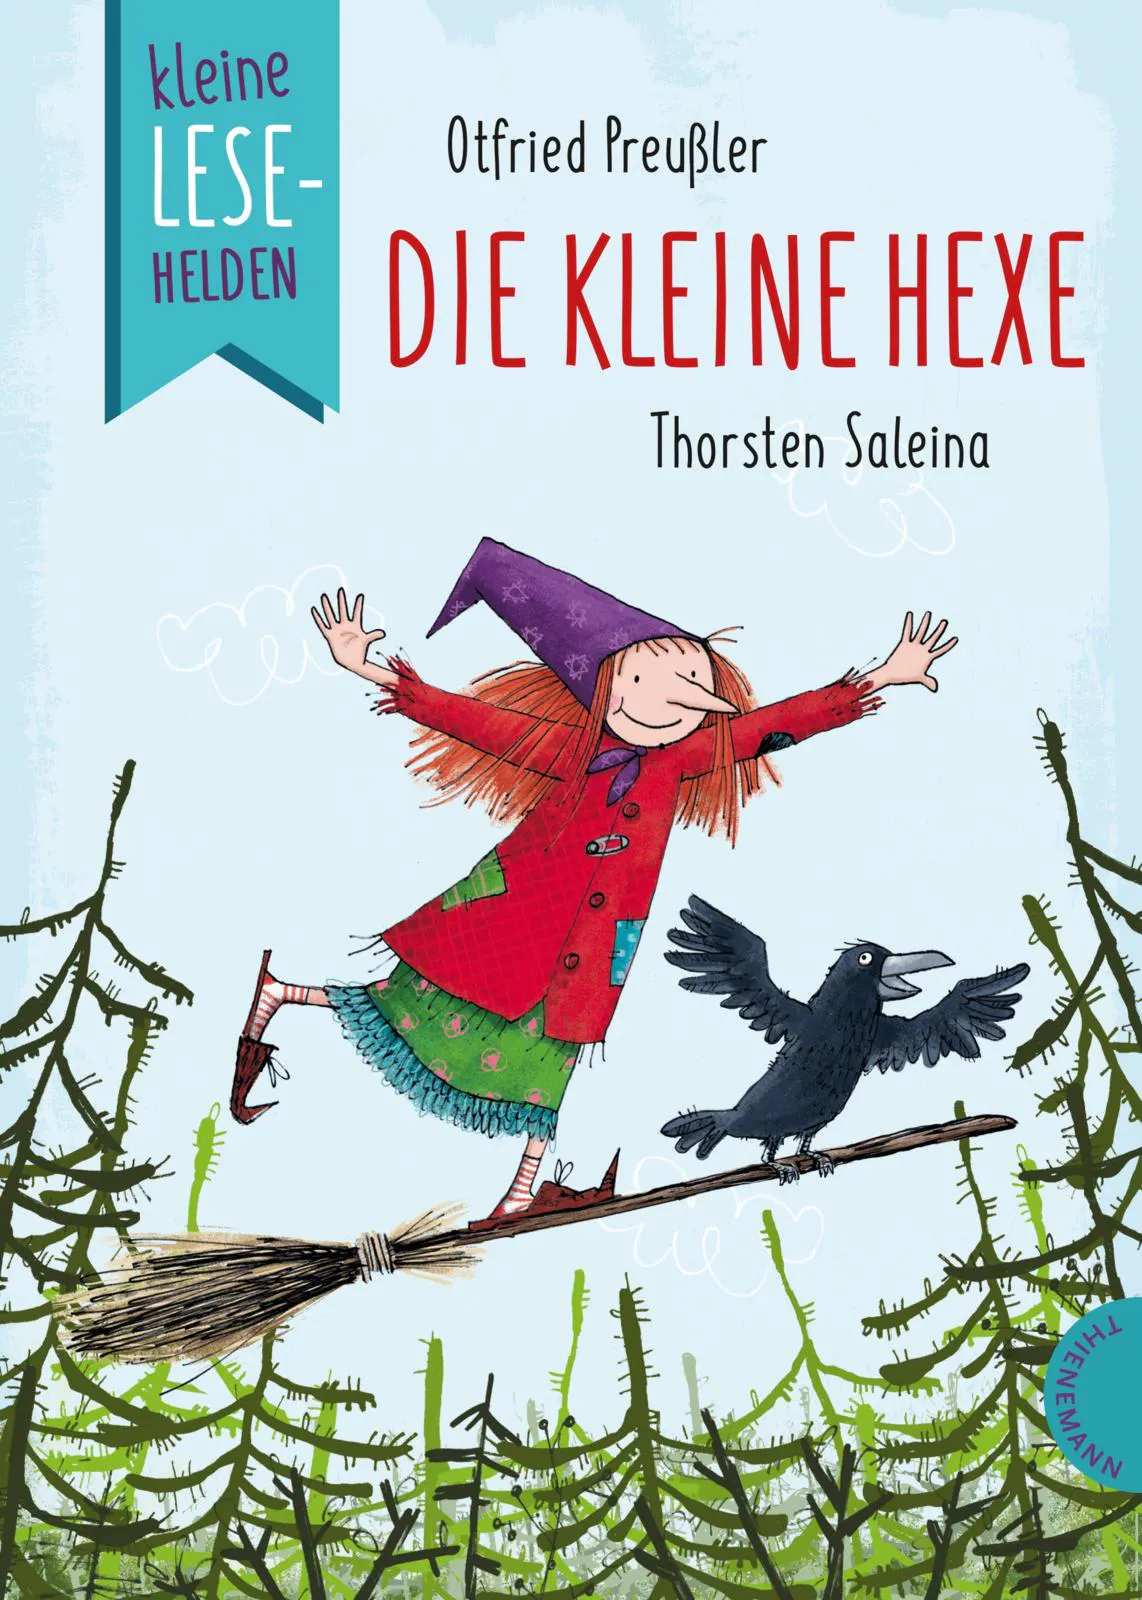 Cover von "Die kleine Hexe" von Otfried Preußler aus der Reihe "Kleine Lesehelden" im Thienemann-Esslinger Verlag